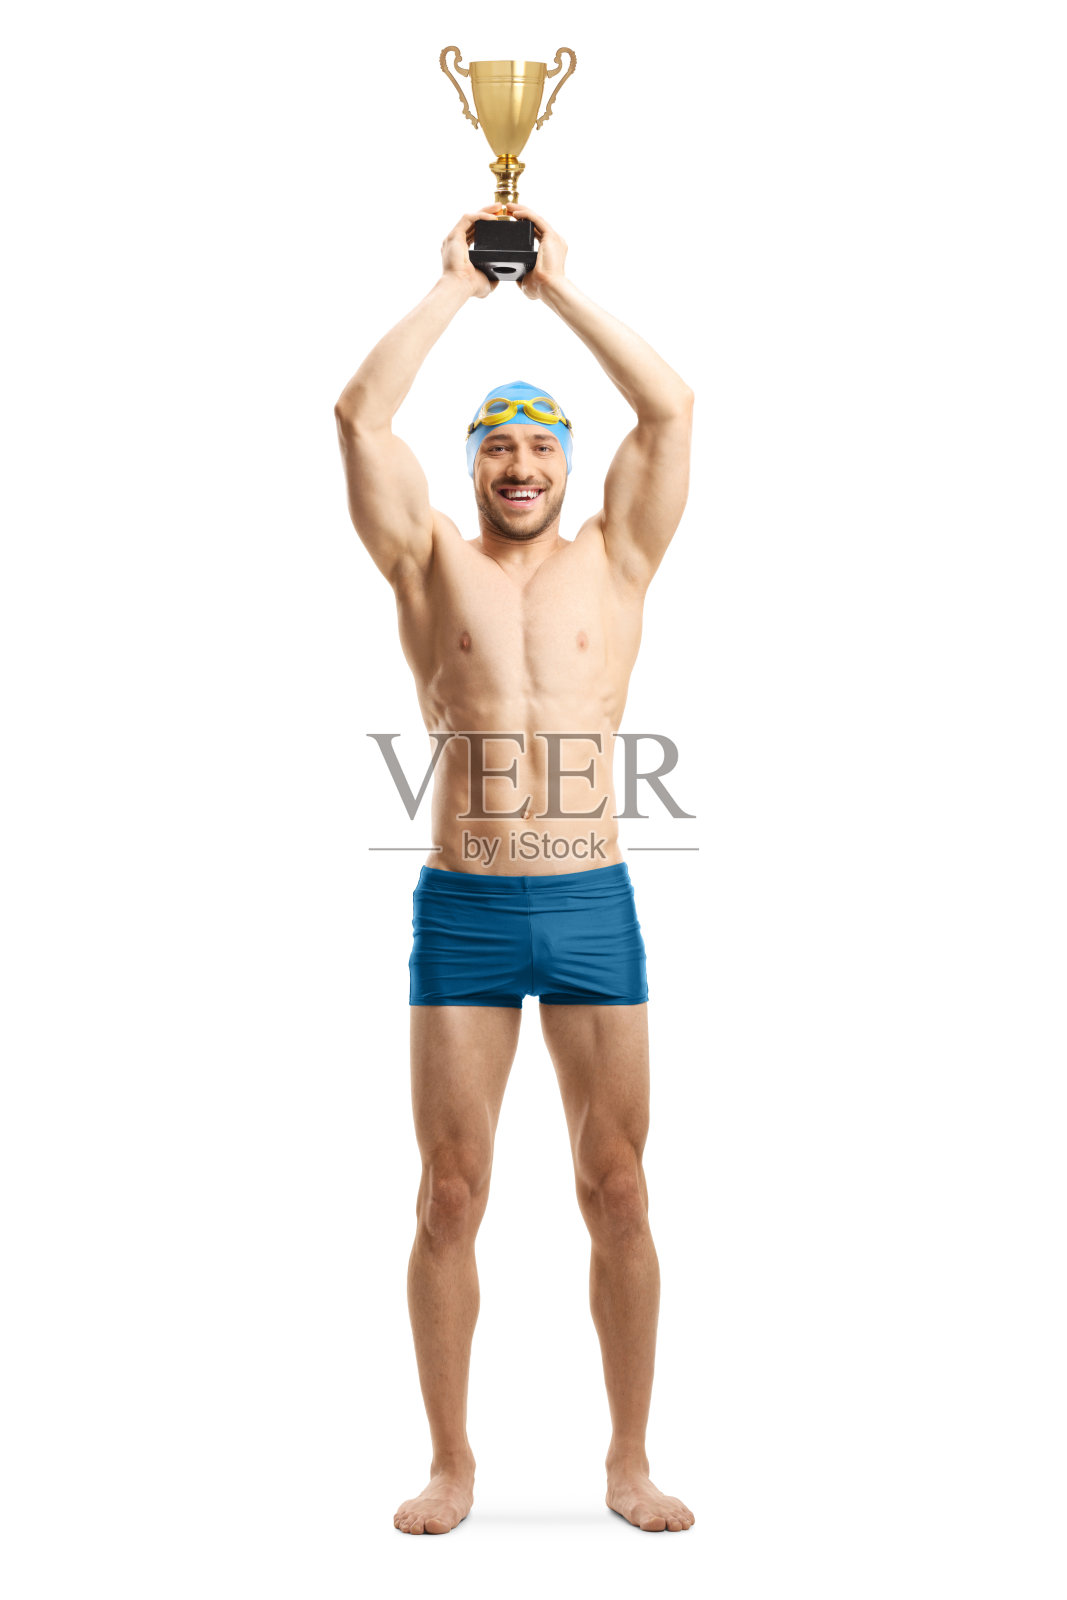 男子游泳运动员举起金杯照片摄影图片